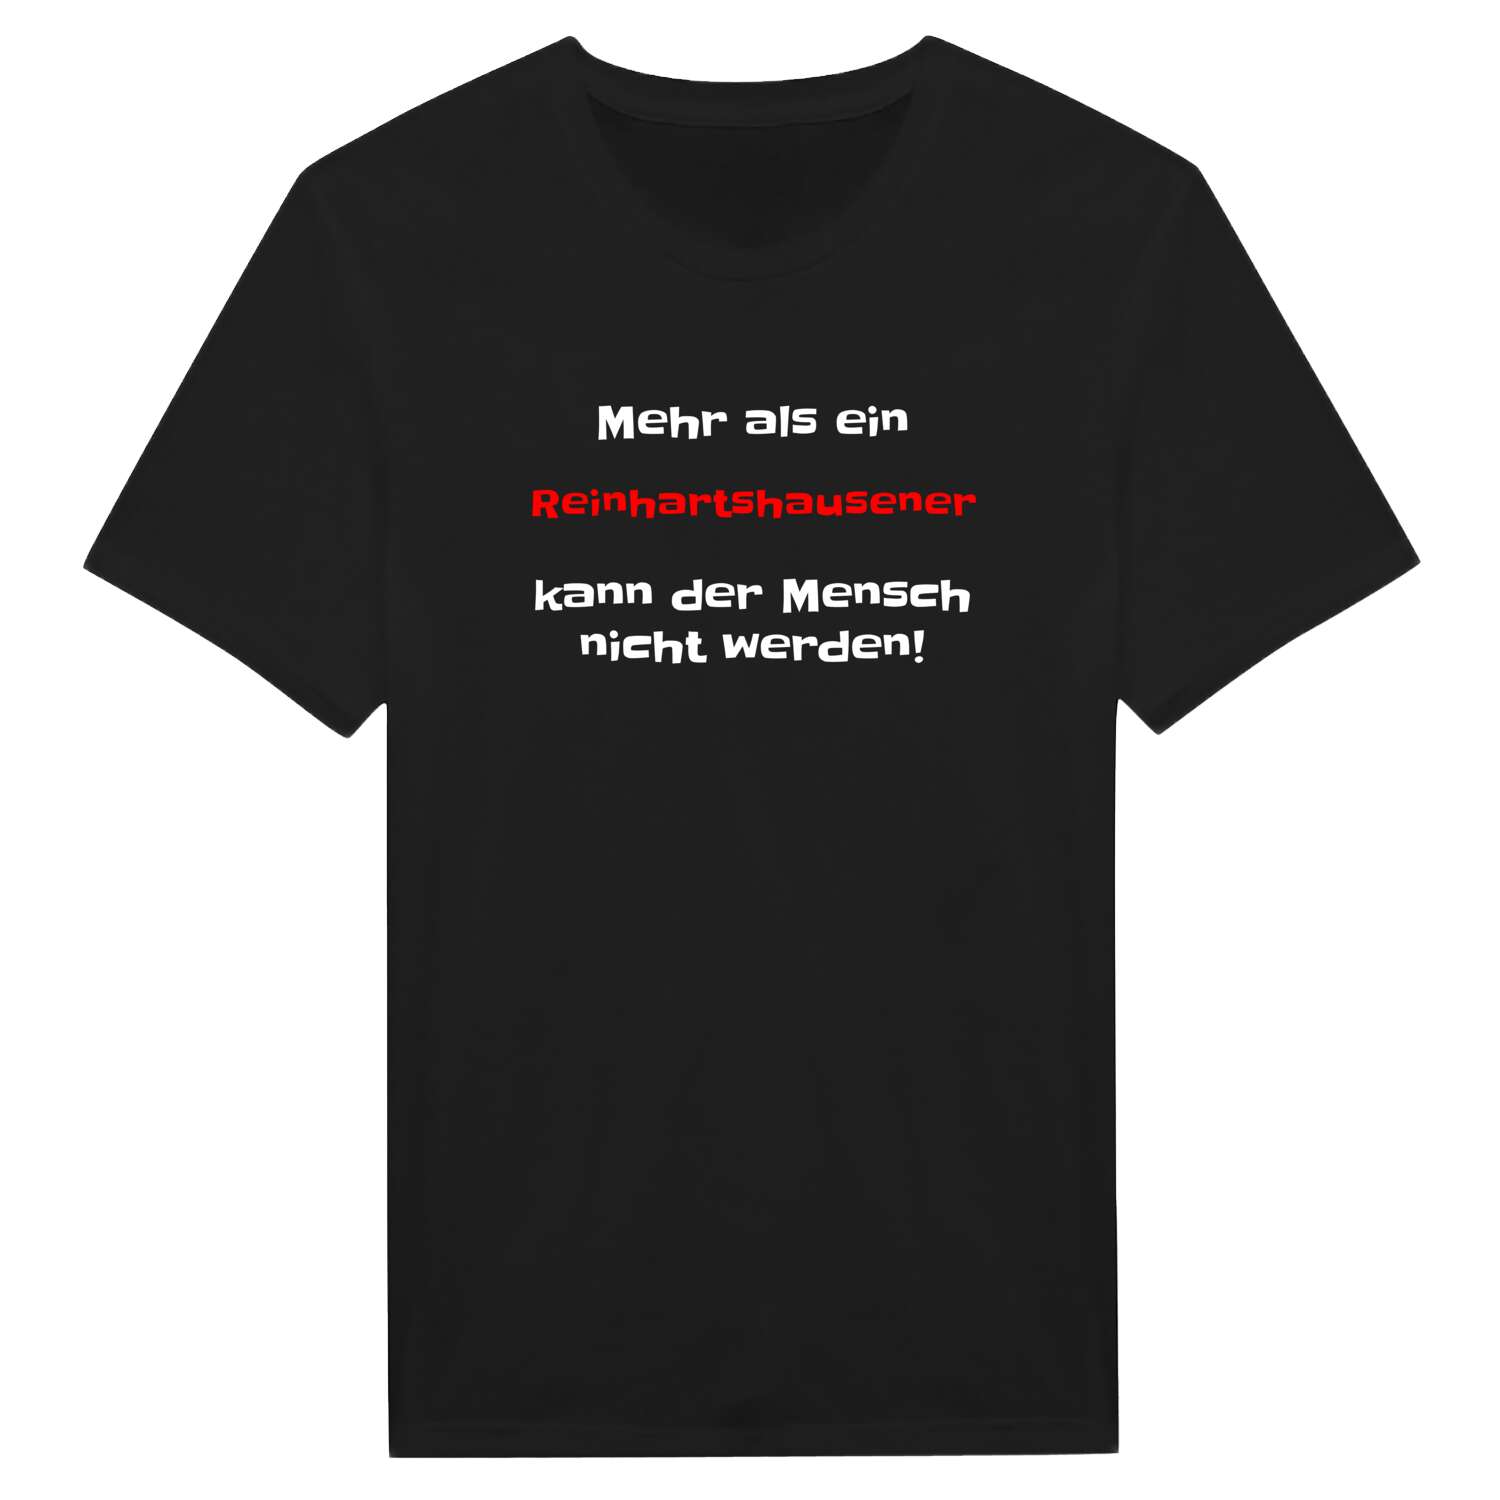 Reinhartshausen T-Shirt »Mehr als ein«